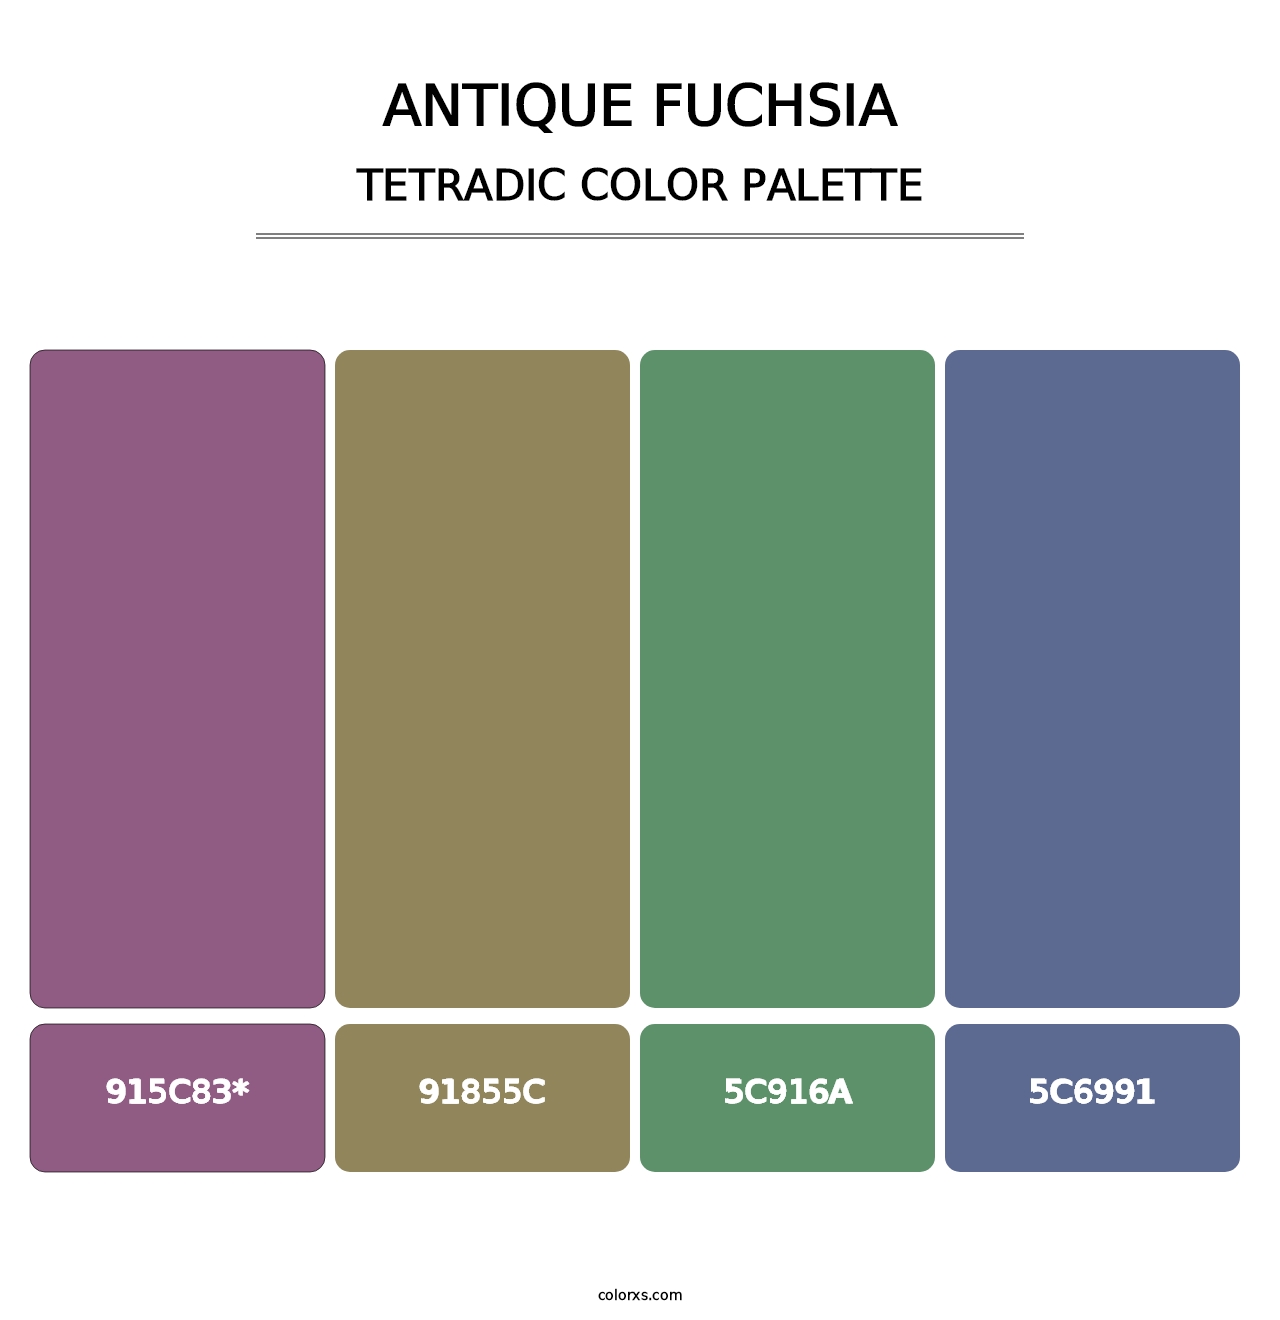 Antique Fuchsia - Tetradic Color Palette